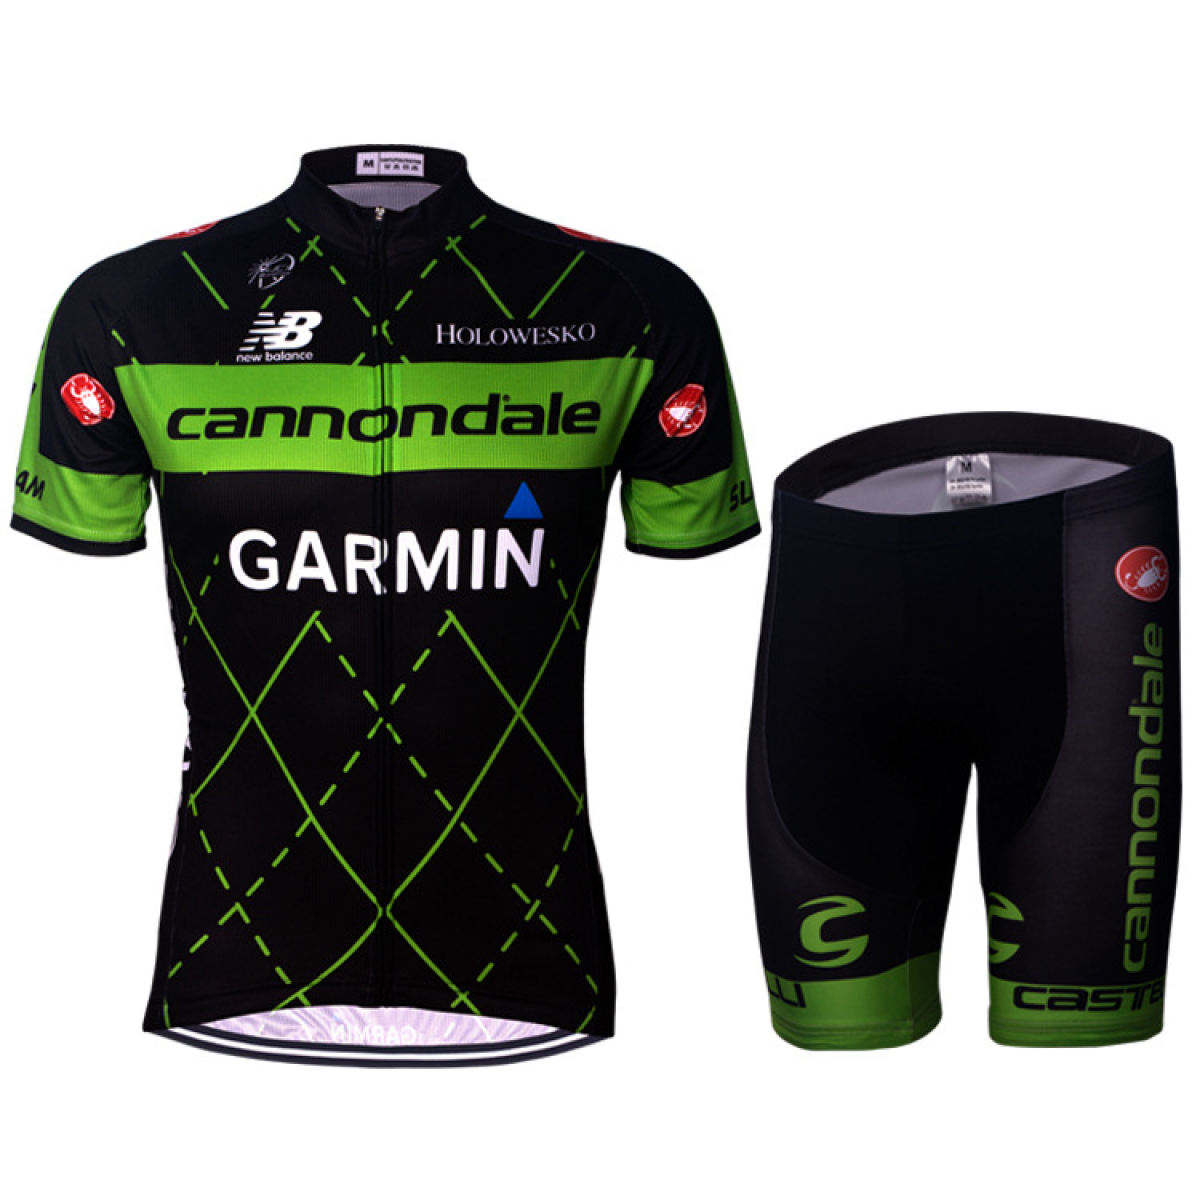 2020ชุดสั้นปั่นจักรยานลายทีม-ชุดปั่นจักรยาน（เสื้อผ้ากางเกง ） Cycling clothing เขียว